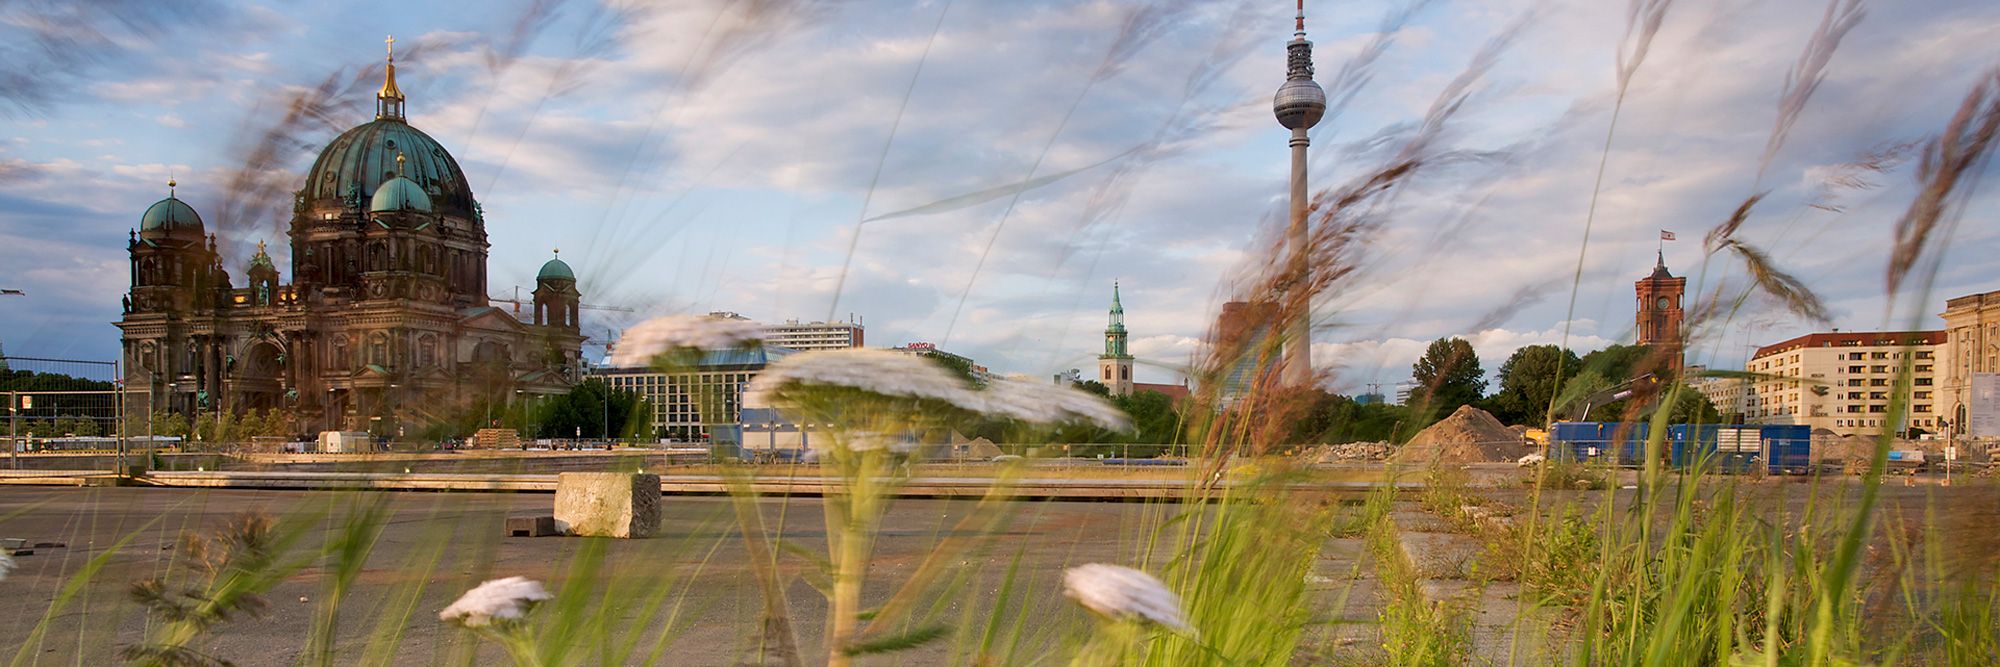 Ein weiter Panoramablick über die riesige Brachfläche in Berlin-Mitte, wo heute das neu errichtete Stadtschloss steht. Unscharf im Vordergrund ragen drei weiße Schirmchenblüten von Schafgarben zwischen grünen und braunen Gräsern auf. In der Ferne erheben sich der Berliner Dom, die Marienkirche, der Fernsehturm und der Turm des Roten Rathauses in den blauen bewölkten Himmel.